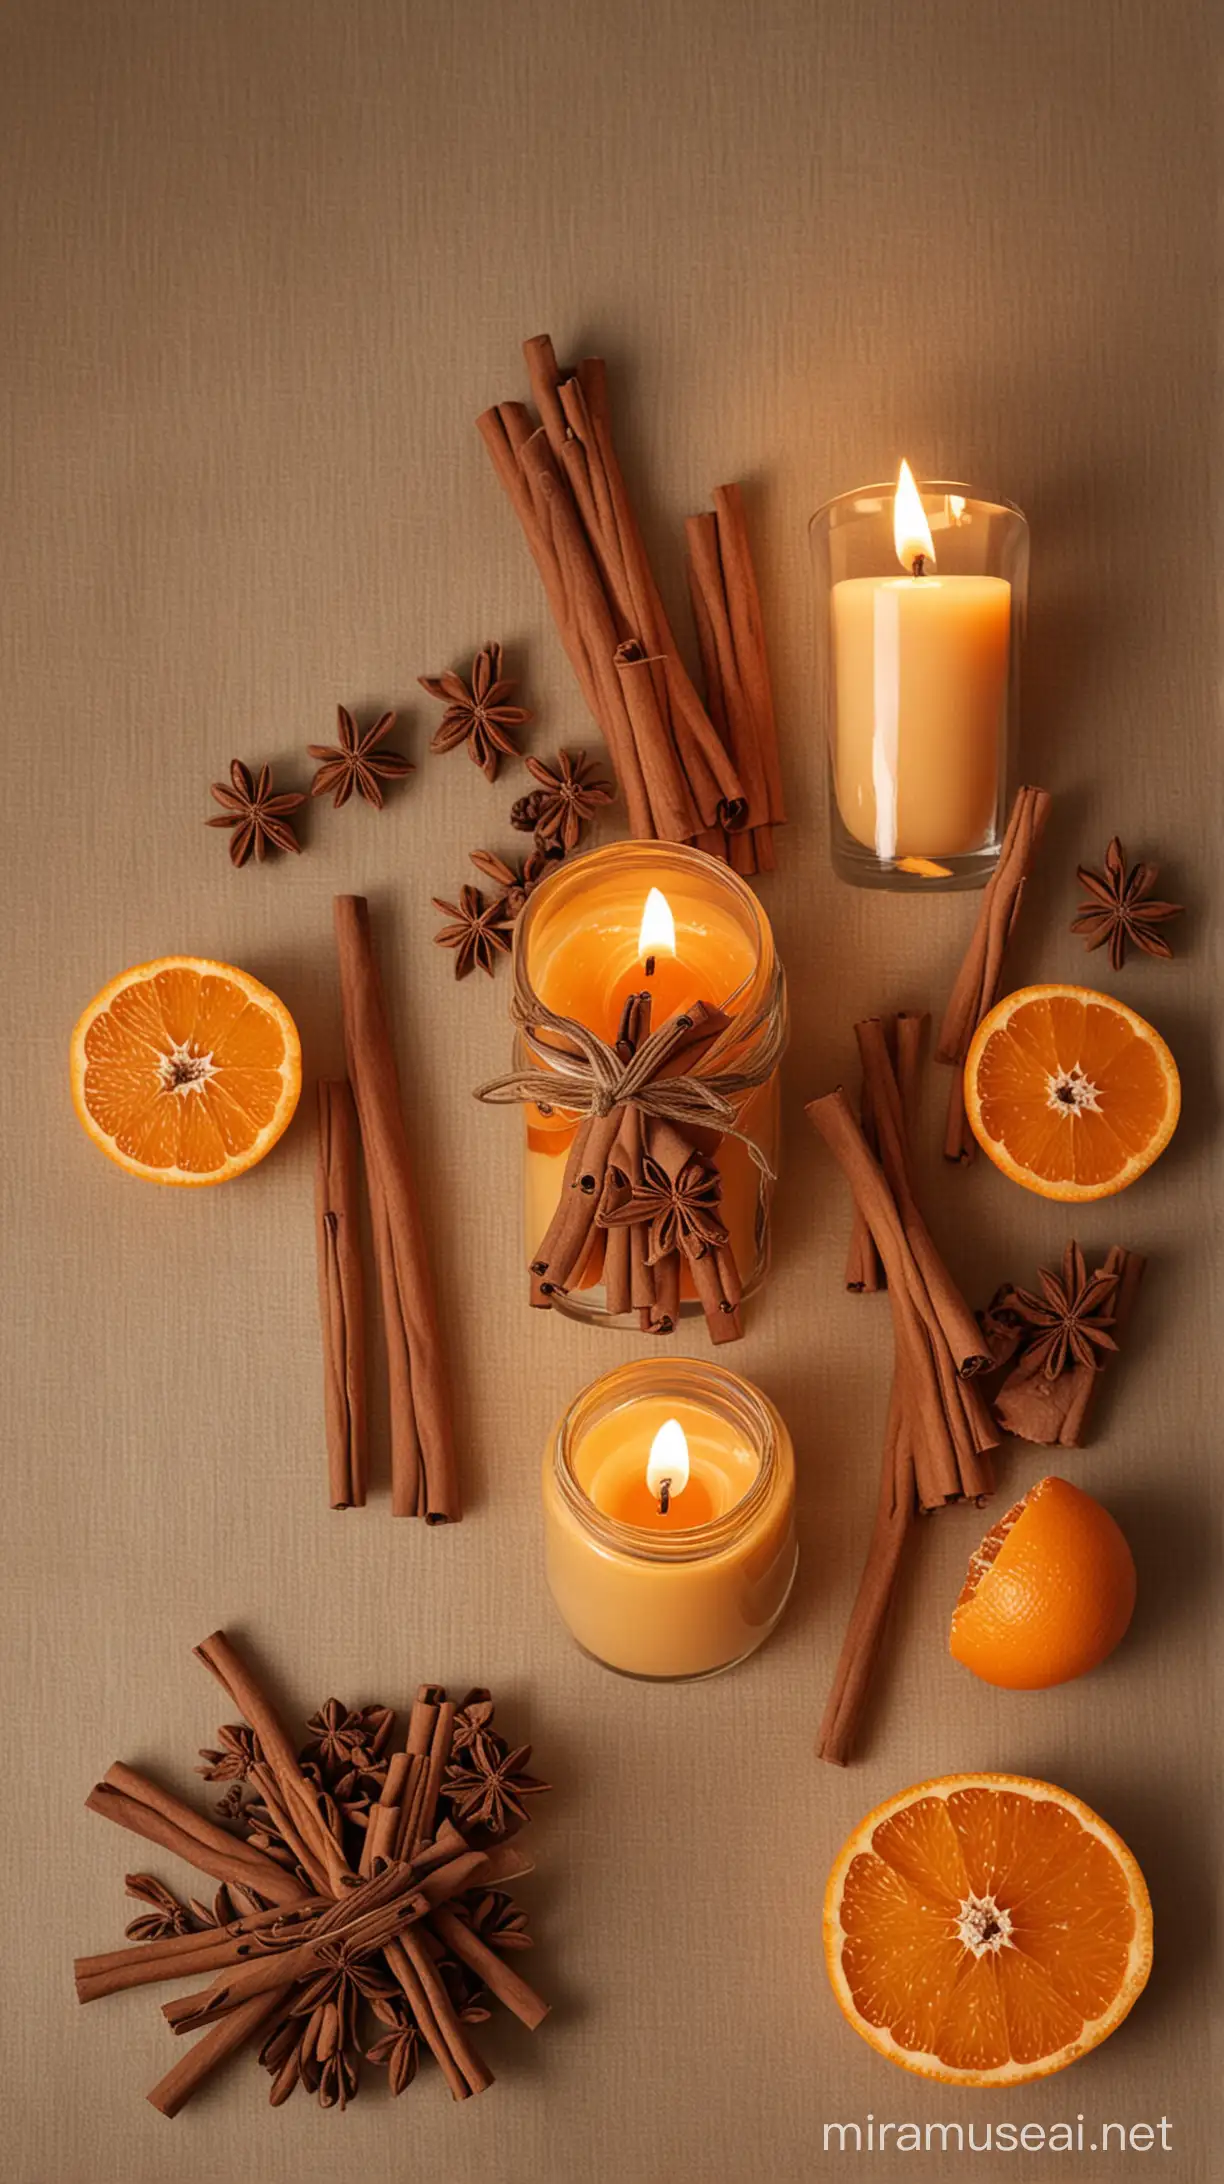 Создайте изображение ароматической свечи, которая освещает уютную комнату, окруженную сушеными апельсинами и коричными палочками. Подчеркните атмосферу уюта и спокойствия, передавая натуральные ингредиенты и нежные оттенки цвета."